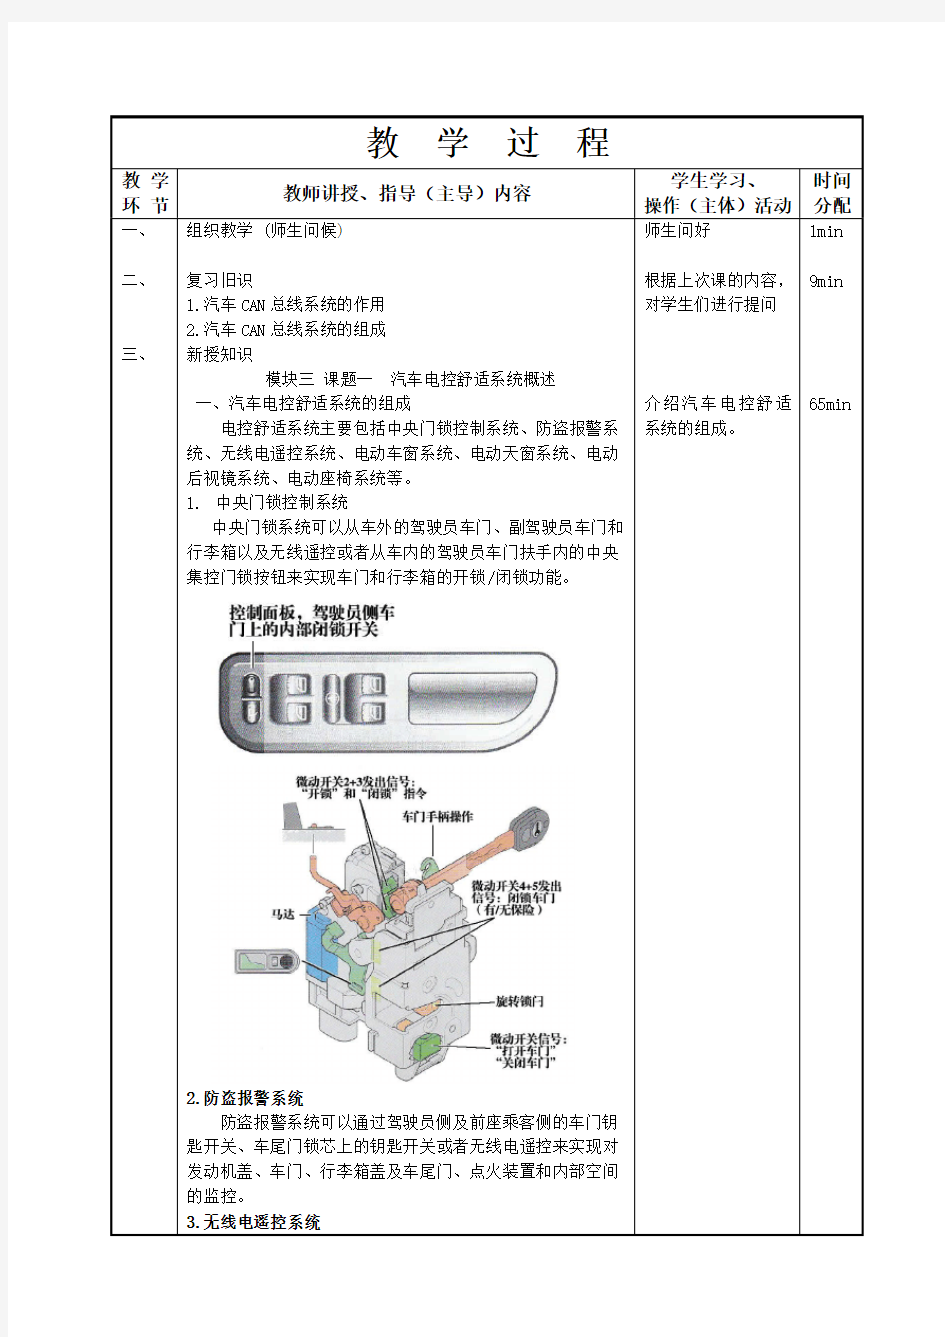 41-42汽车电控舒适系统概述(一)-汽车车身电控系统教案